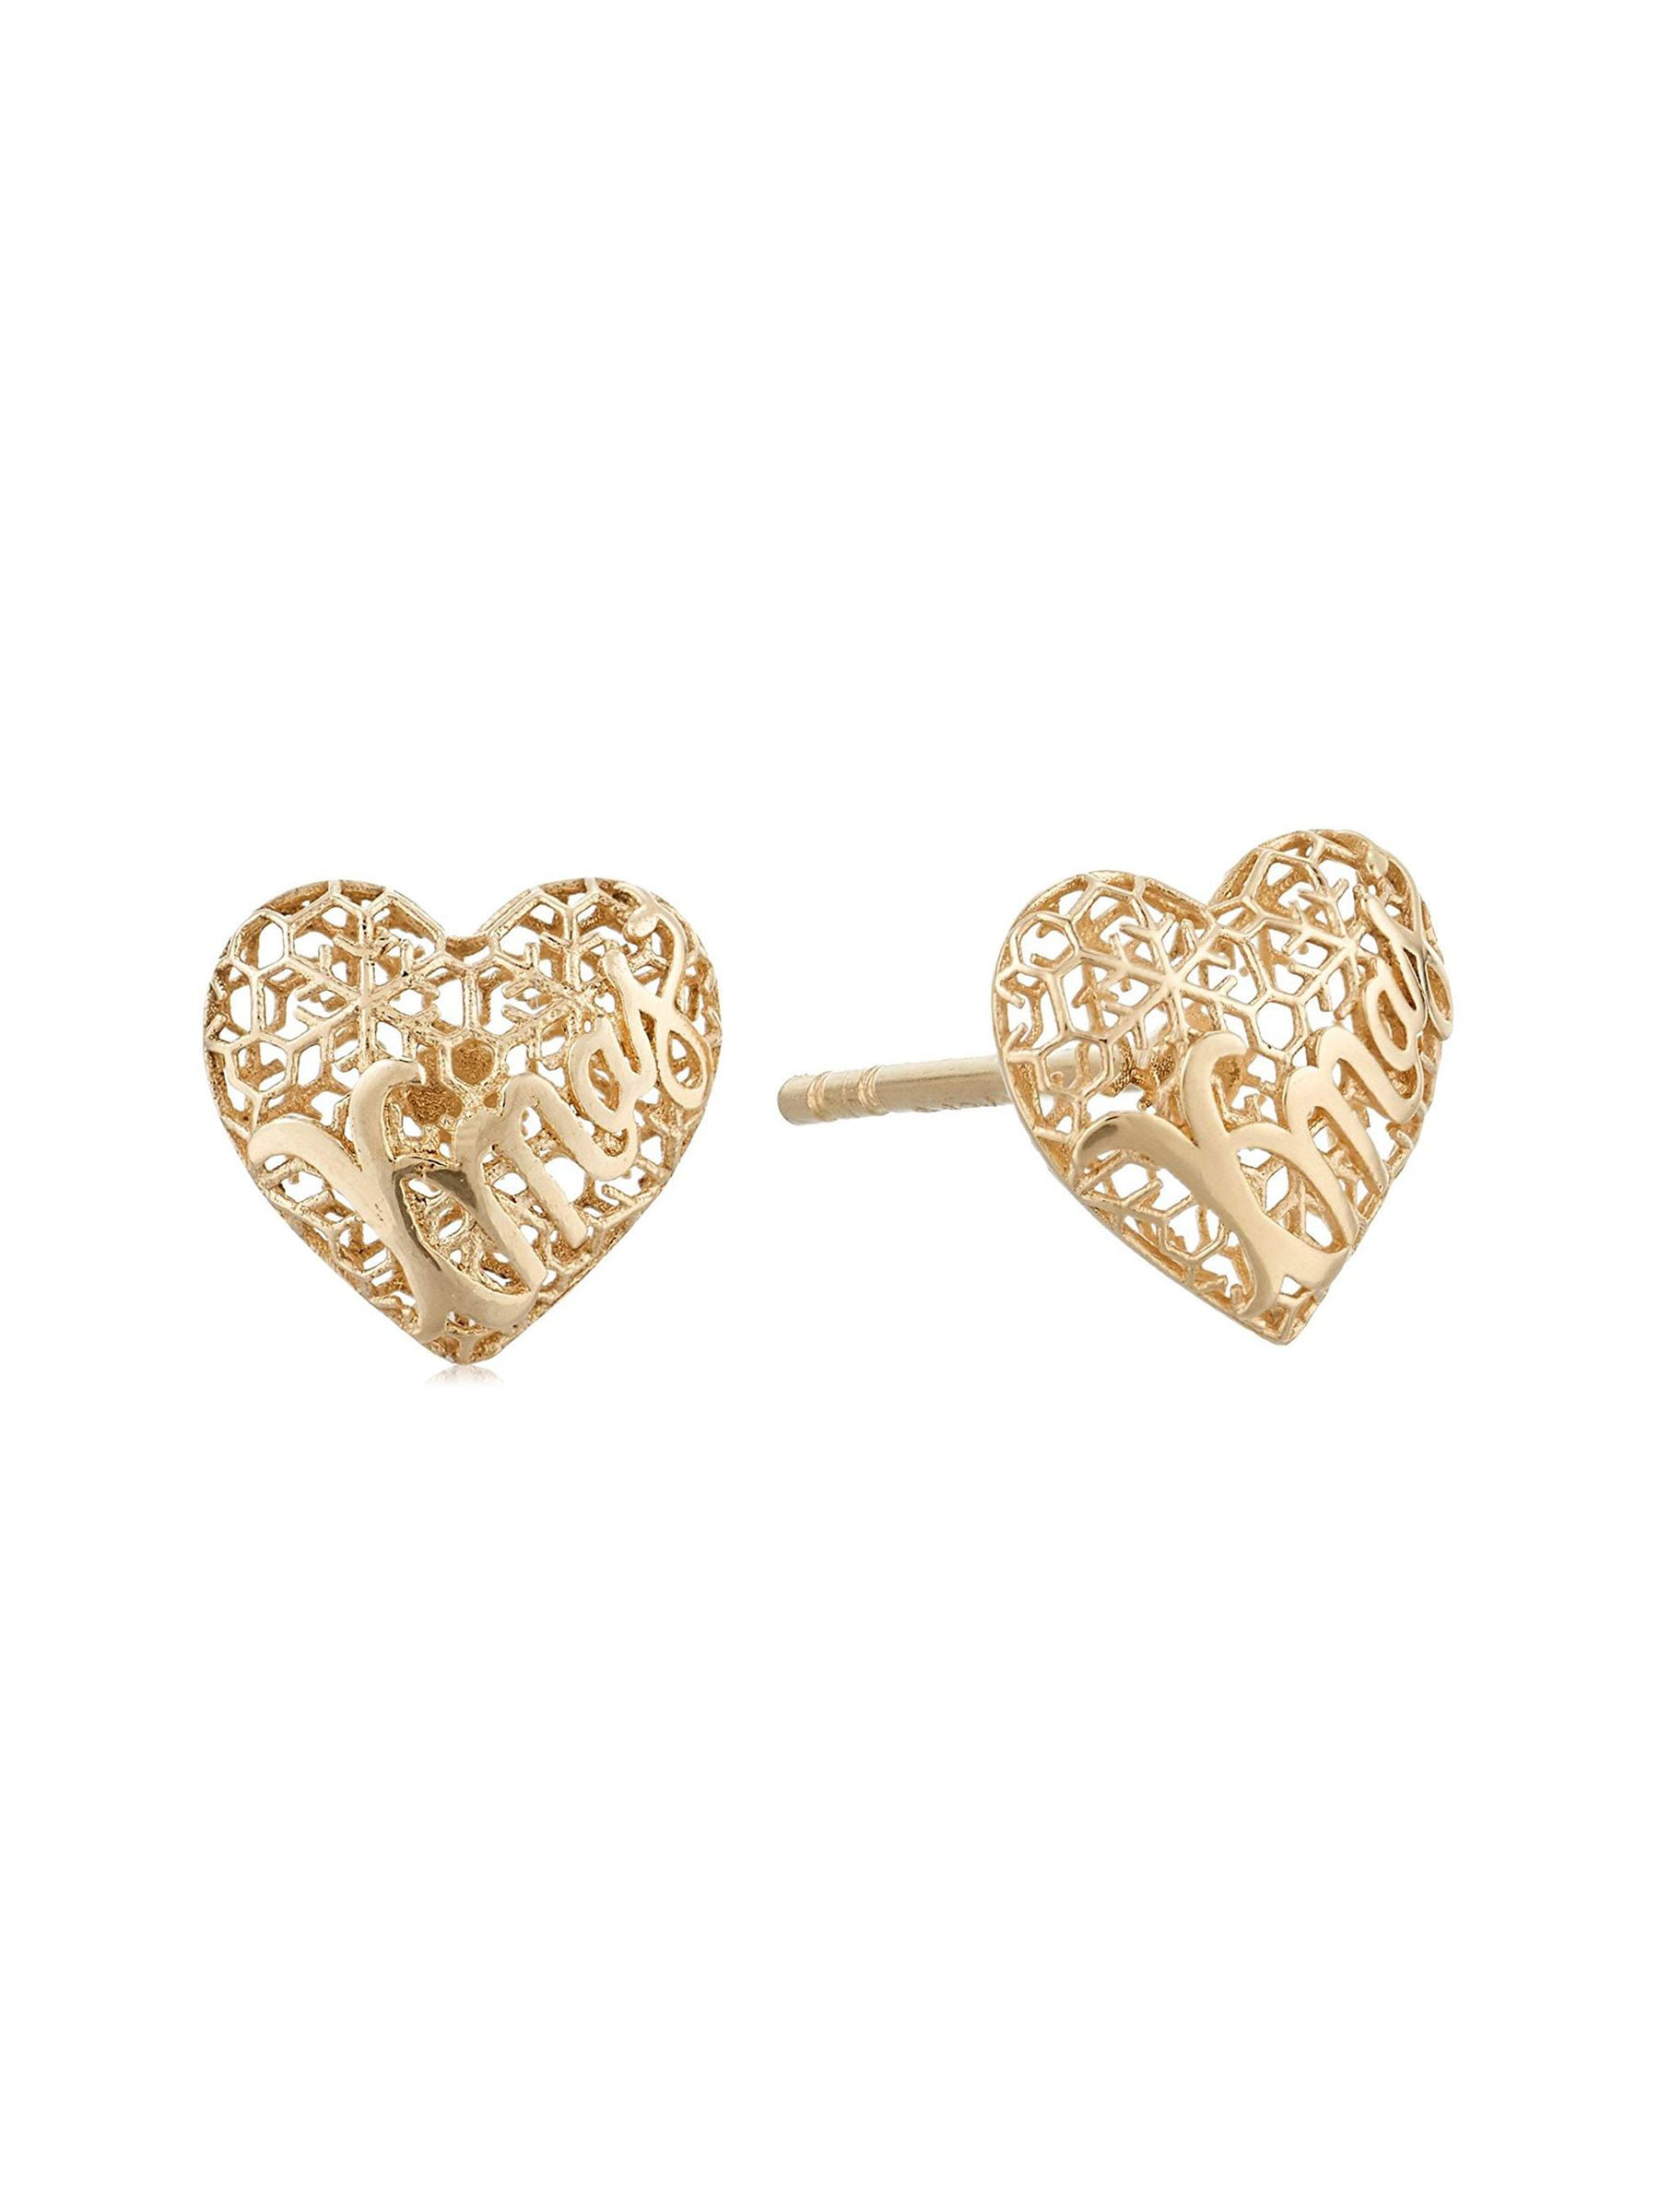 Eternity Gold Chandelier Mesh Earrings in 10K Yellow Gold